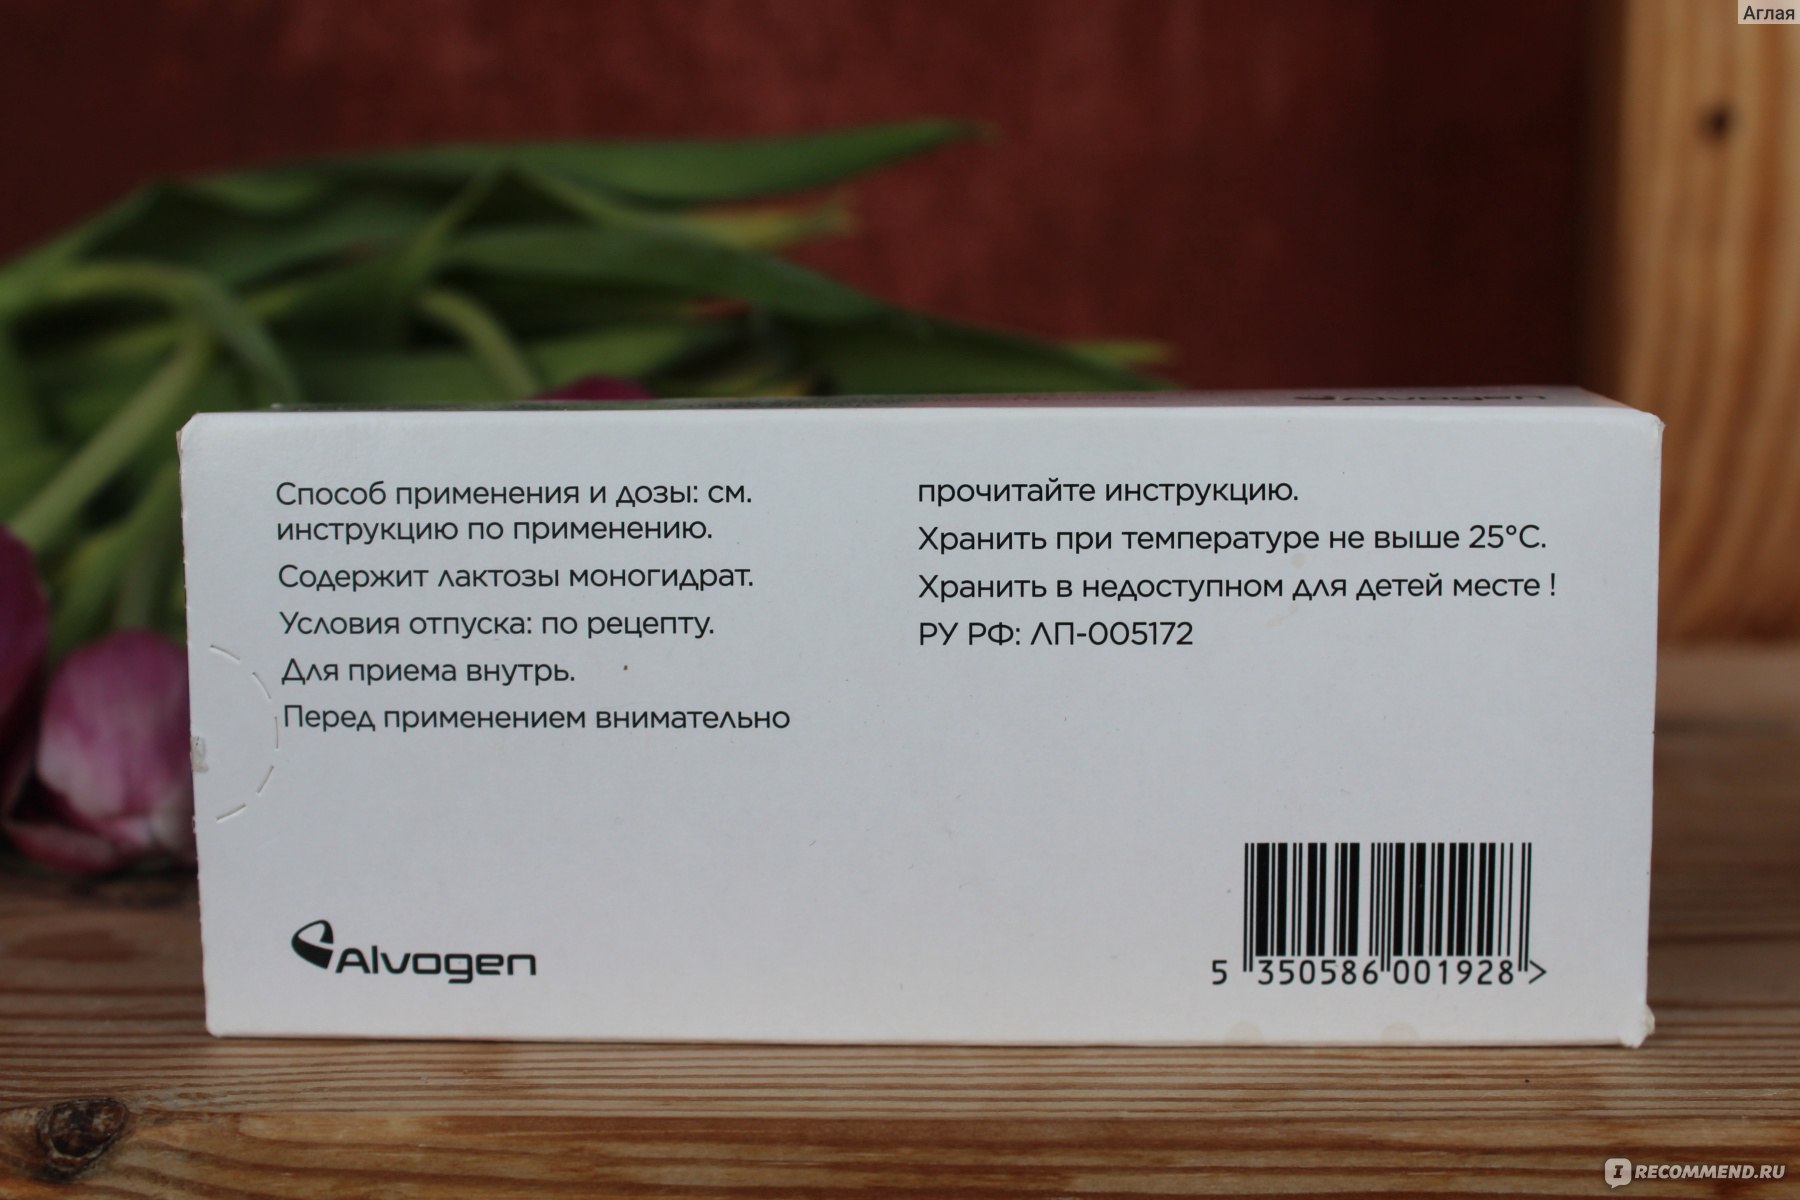 Таблетки Alvogen Алвовизан - «Алвовизан - аналог более дорогой Визанны .